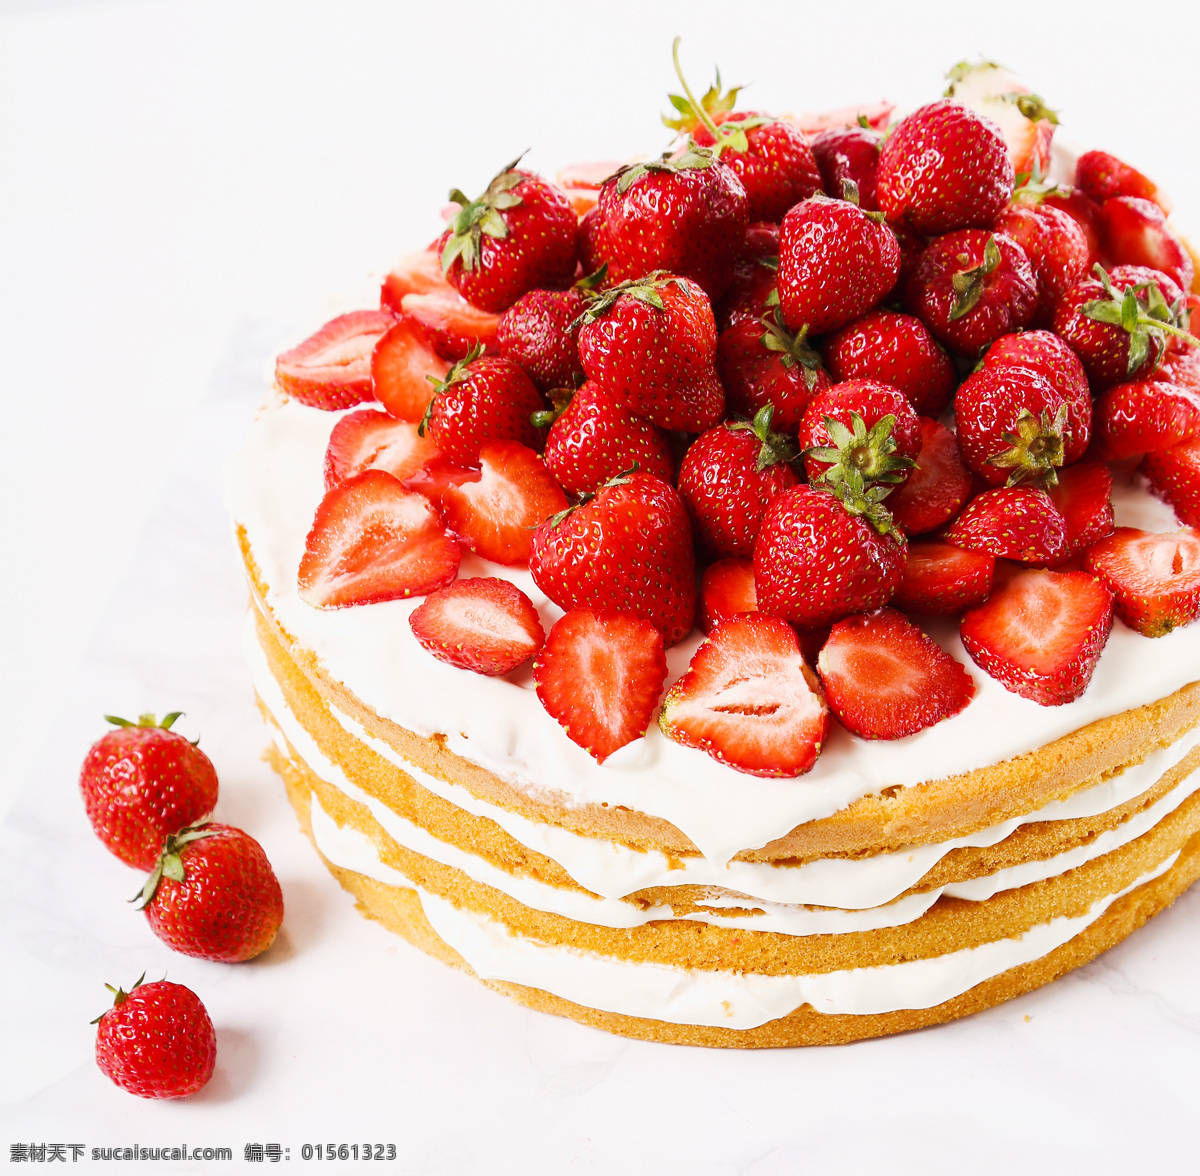 草莓 蛋糕 草莓蛋糕 水果蛋糕 甜品 美食 美味 食物摄影 生日蛋糕图片 餐饮美食